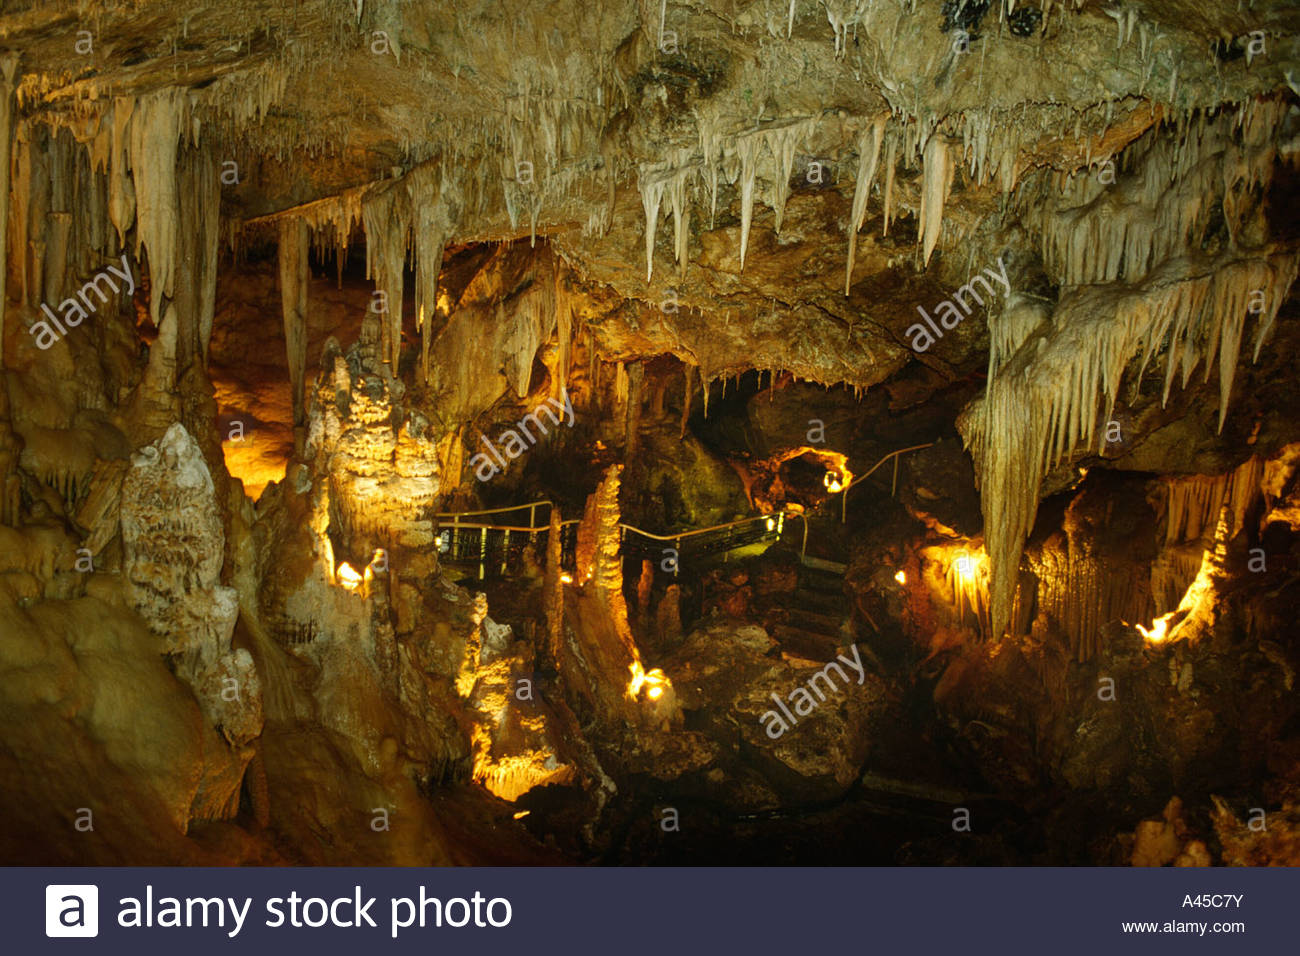 monaco grotte de l observatoire cave grotto inside the jardin exotique A45C7Y